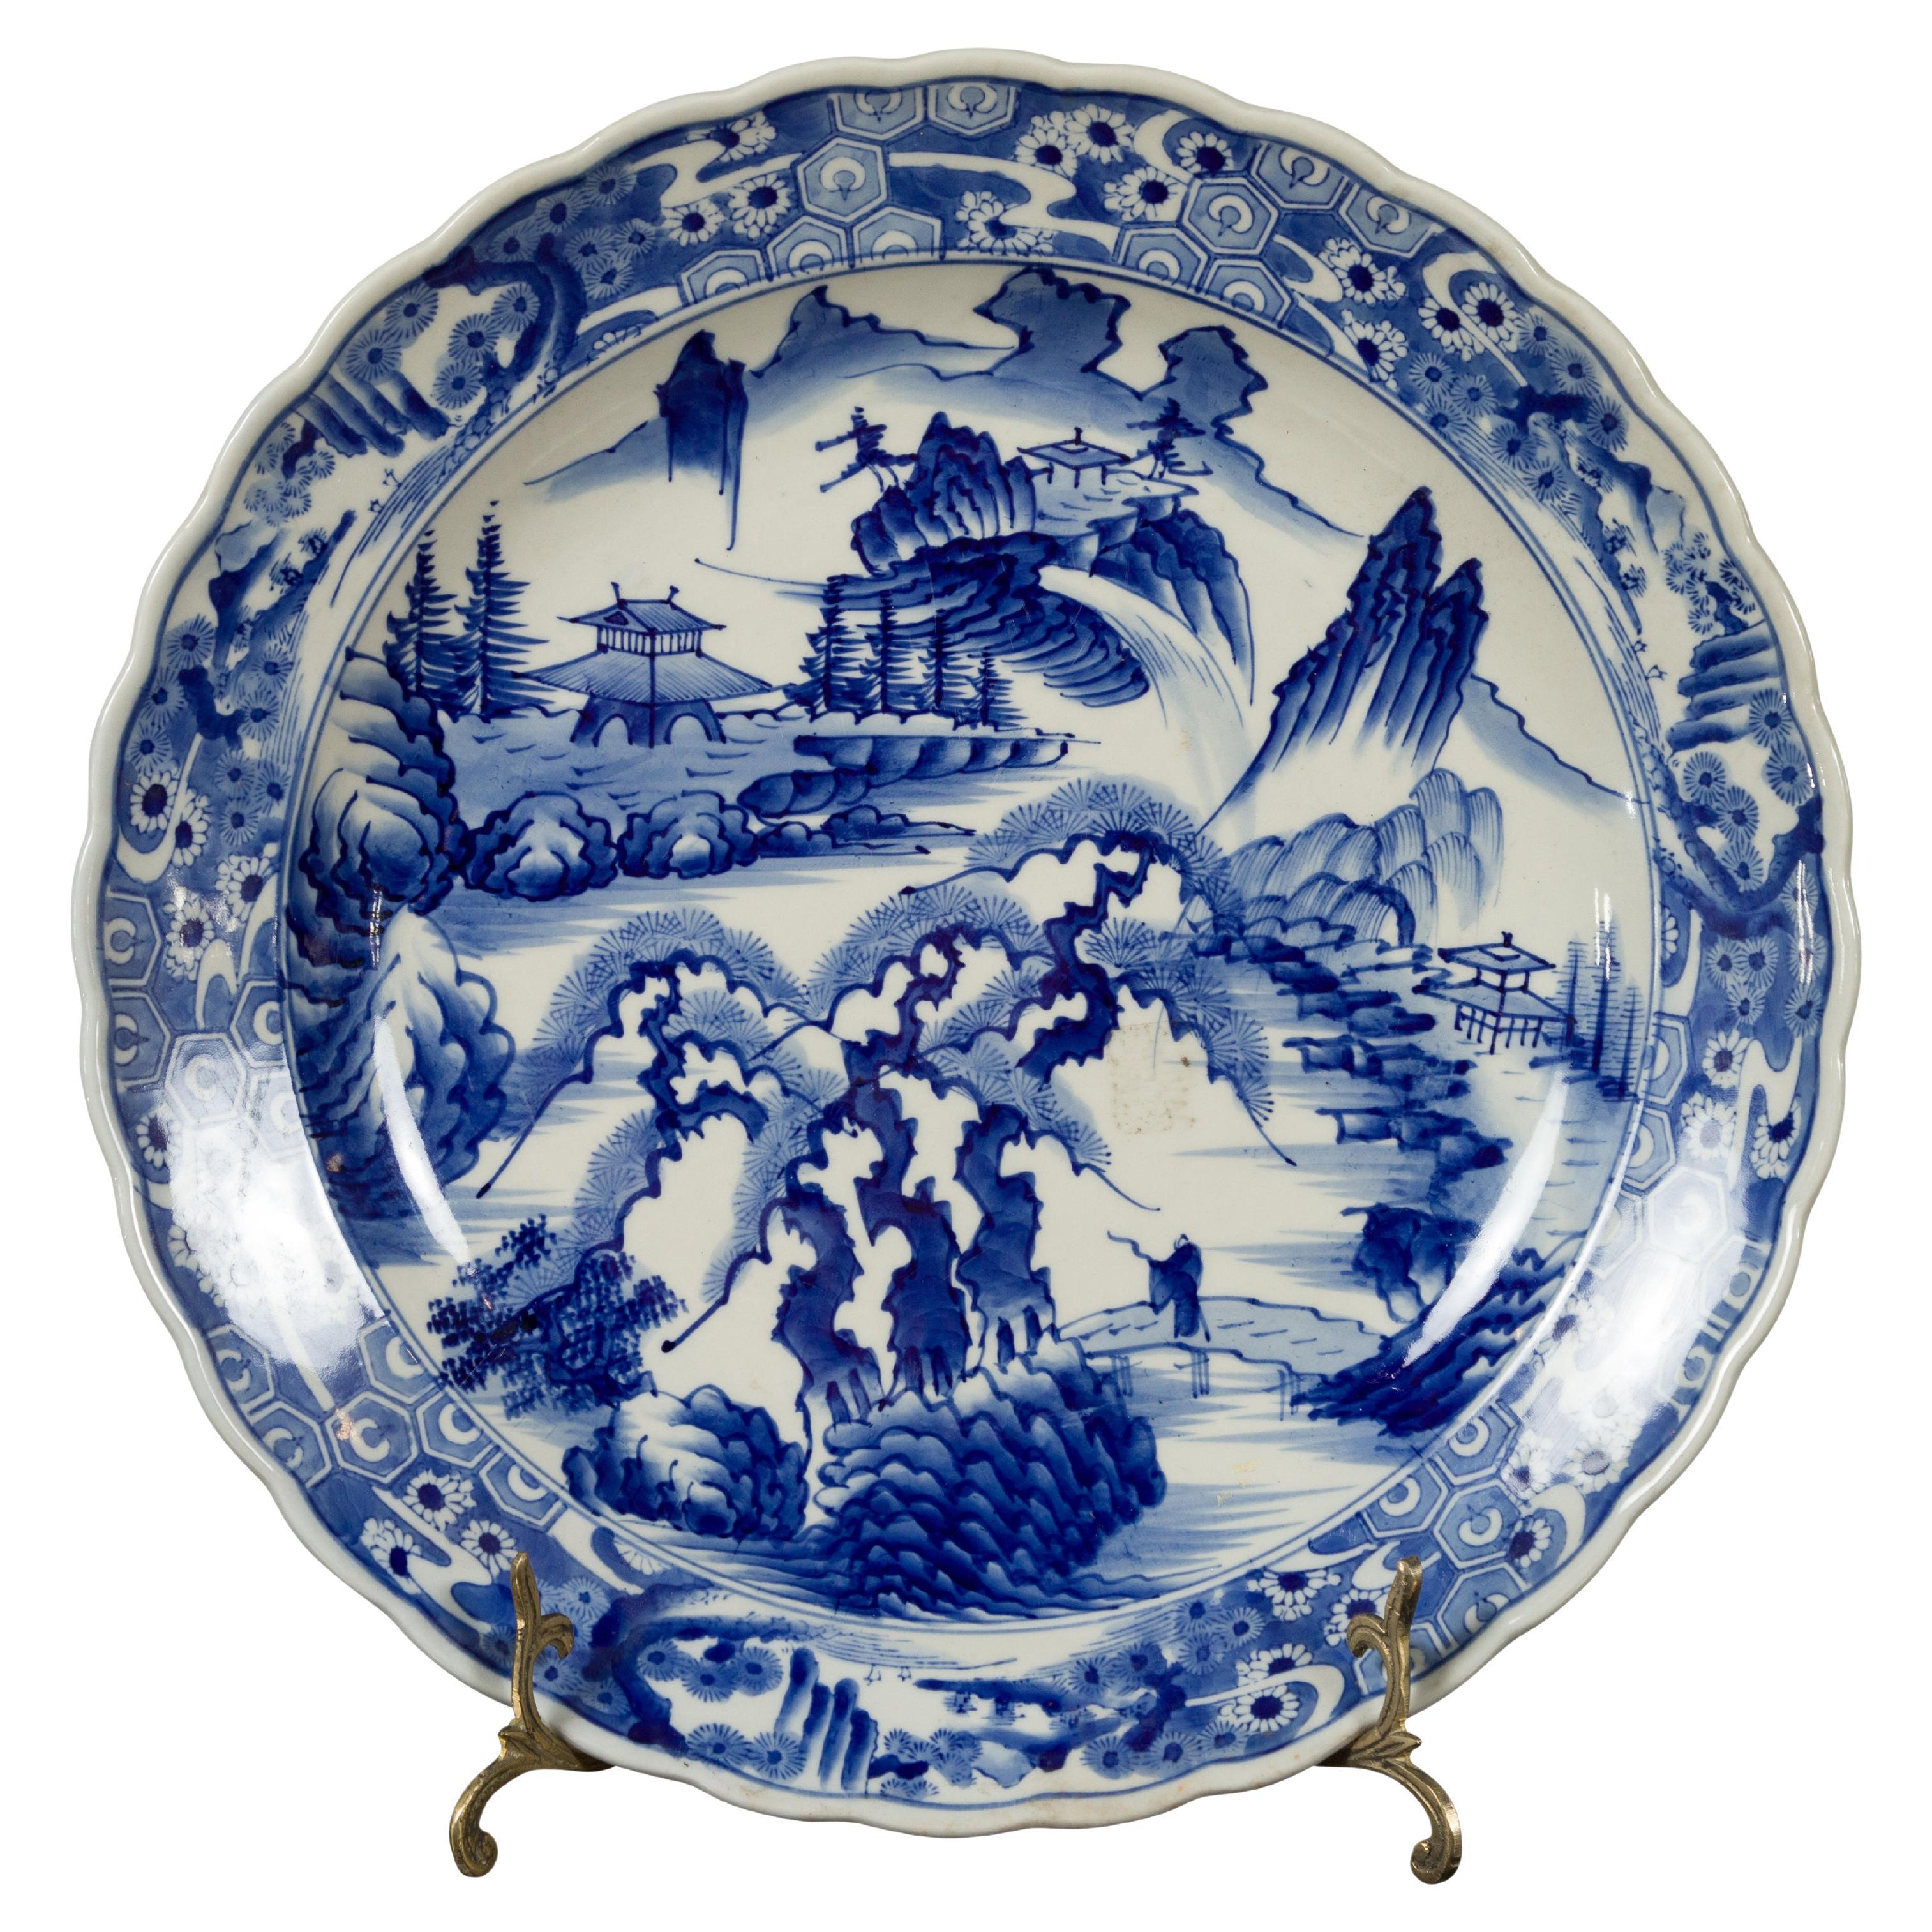 Japanischer Imari-Teller aus japanischem Porzellan des 19. Jahrhunderts mit blauem und weißem Dekor